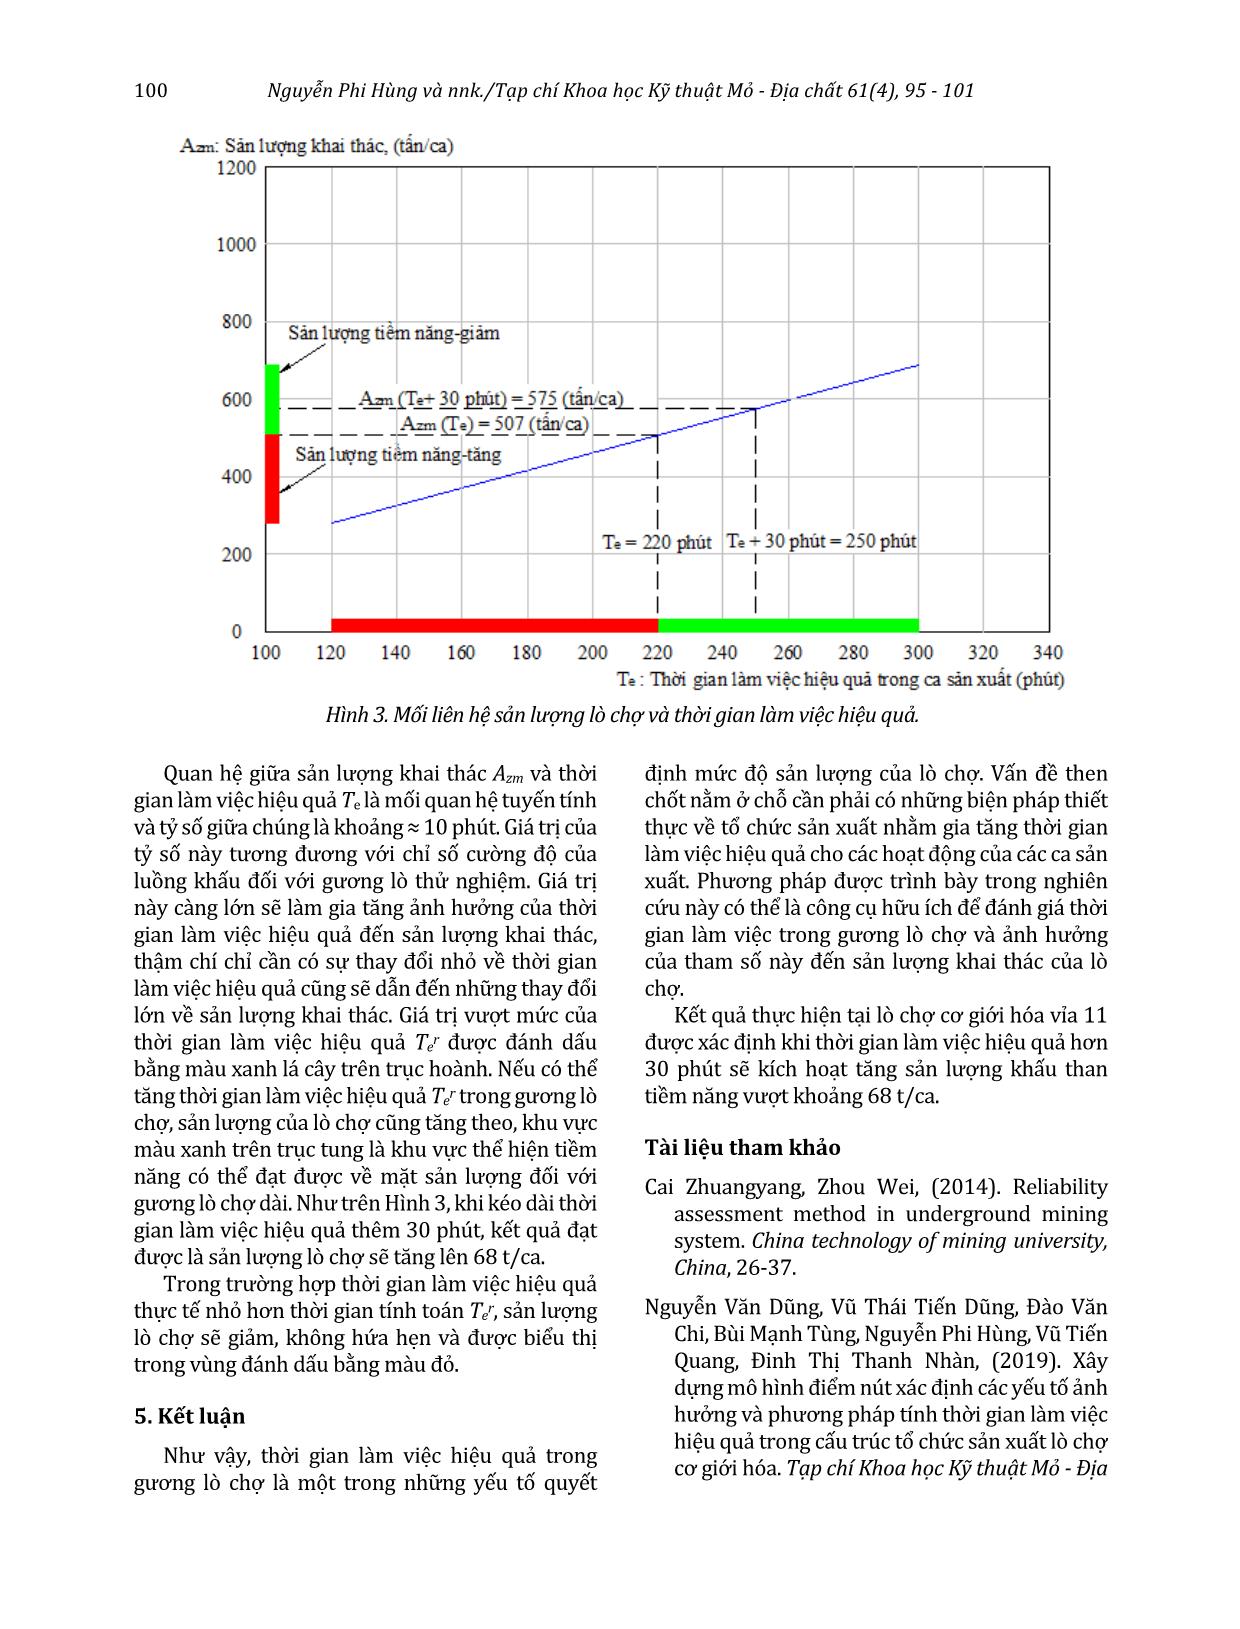 Đánh giá thời gian làm việc hiệu quả tới sản lượng lò chợ cơ giới hóa vỉa 11 mỏ than Hà Lầm trang 6